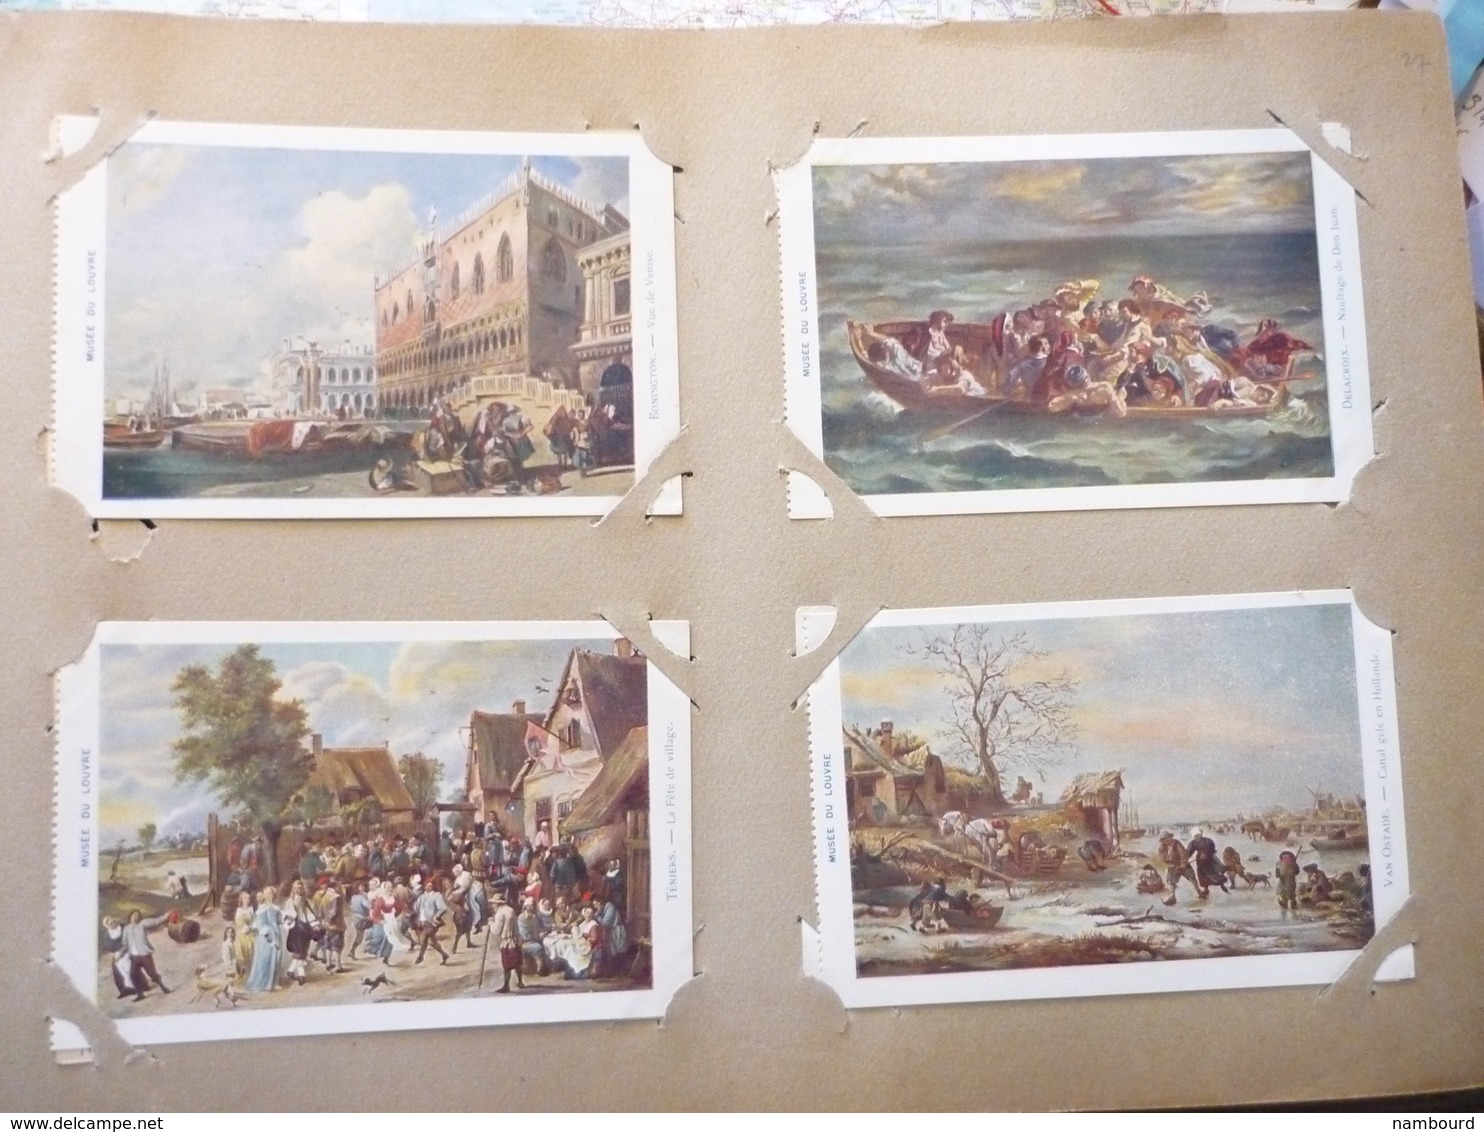 Album ancien contenant 389 cartes postales de tableaux célèbres